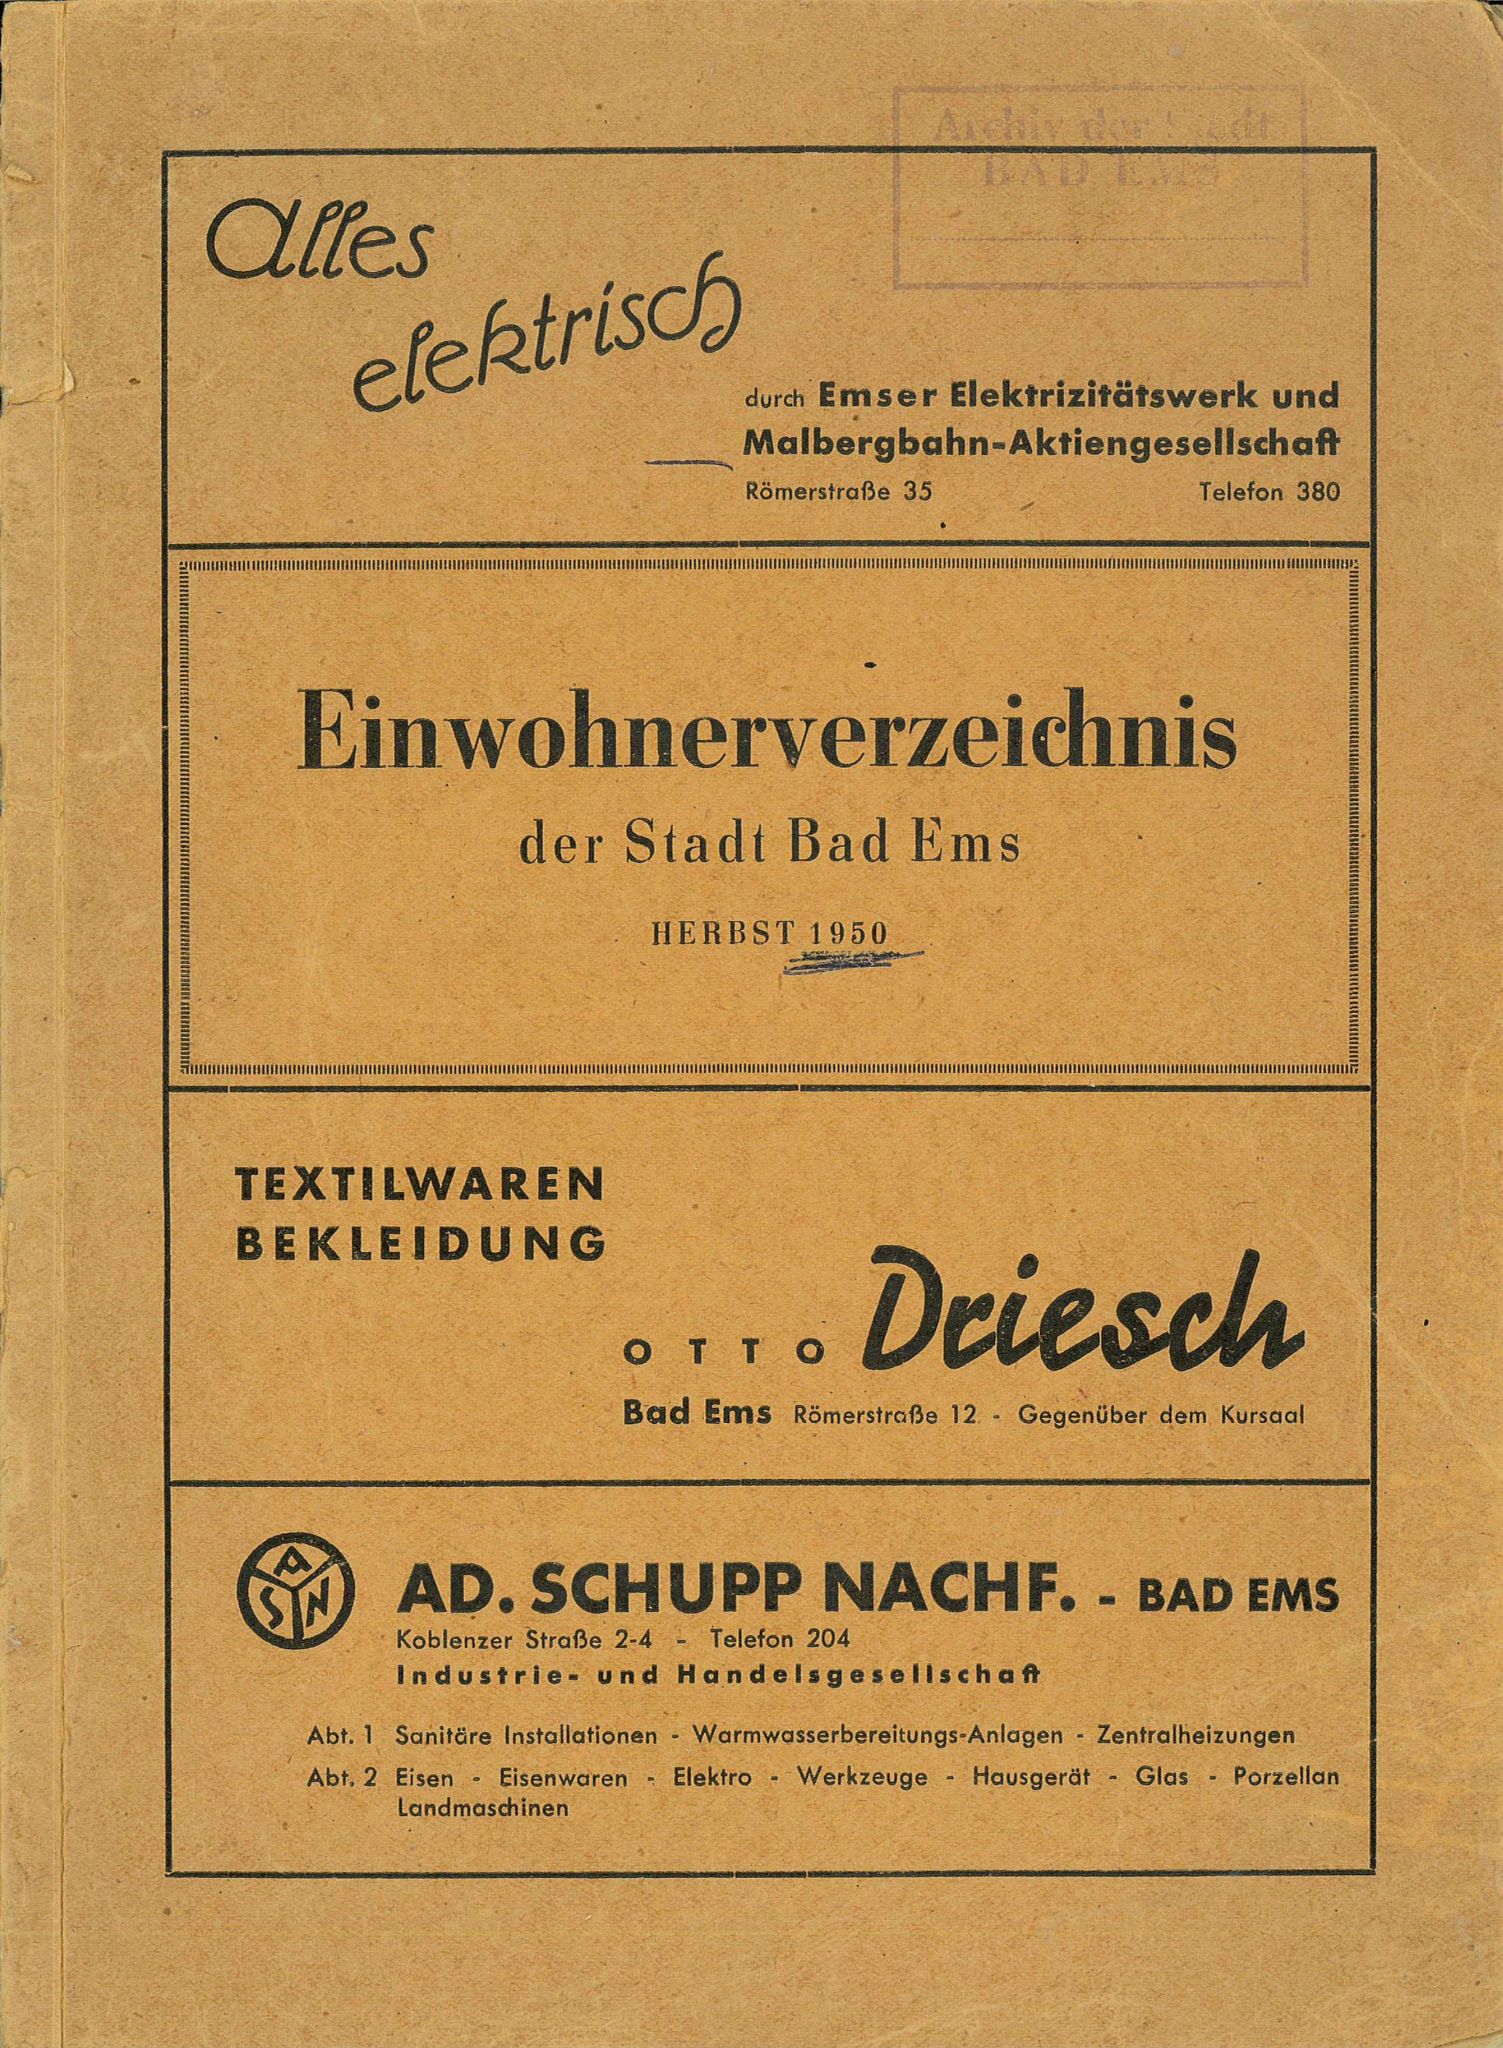 Einwohnerverzeichnis der Stadt Bad Ems Herbst 1950